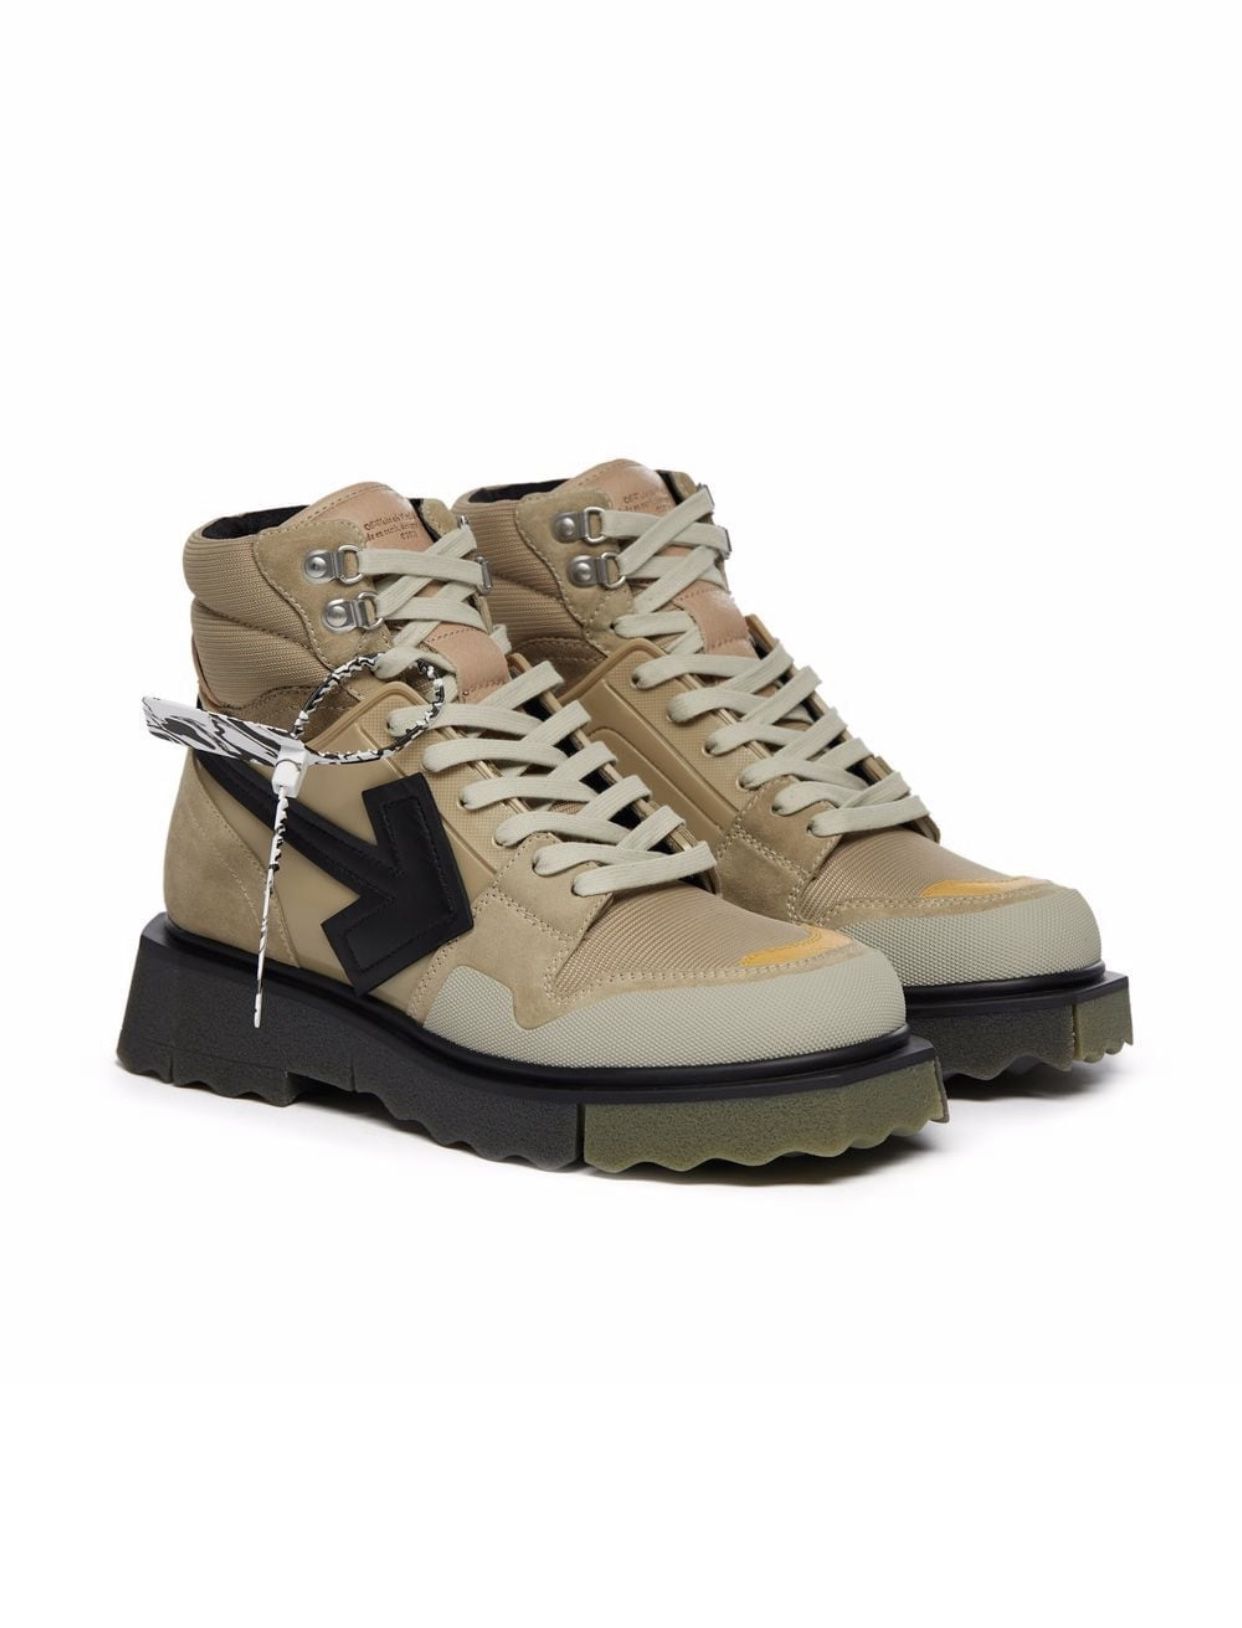 Off-White Arrow Motif Sneaker Boots. 